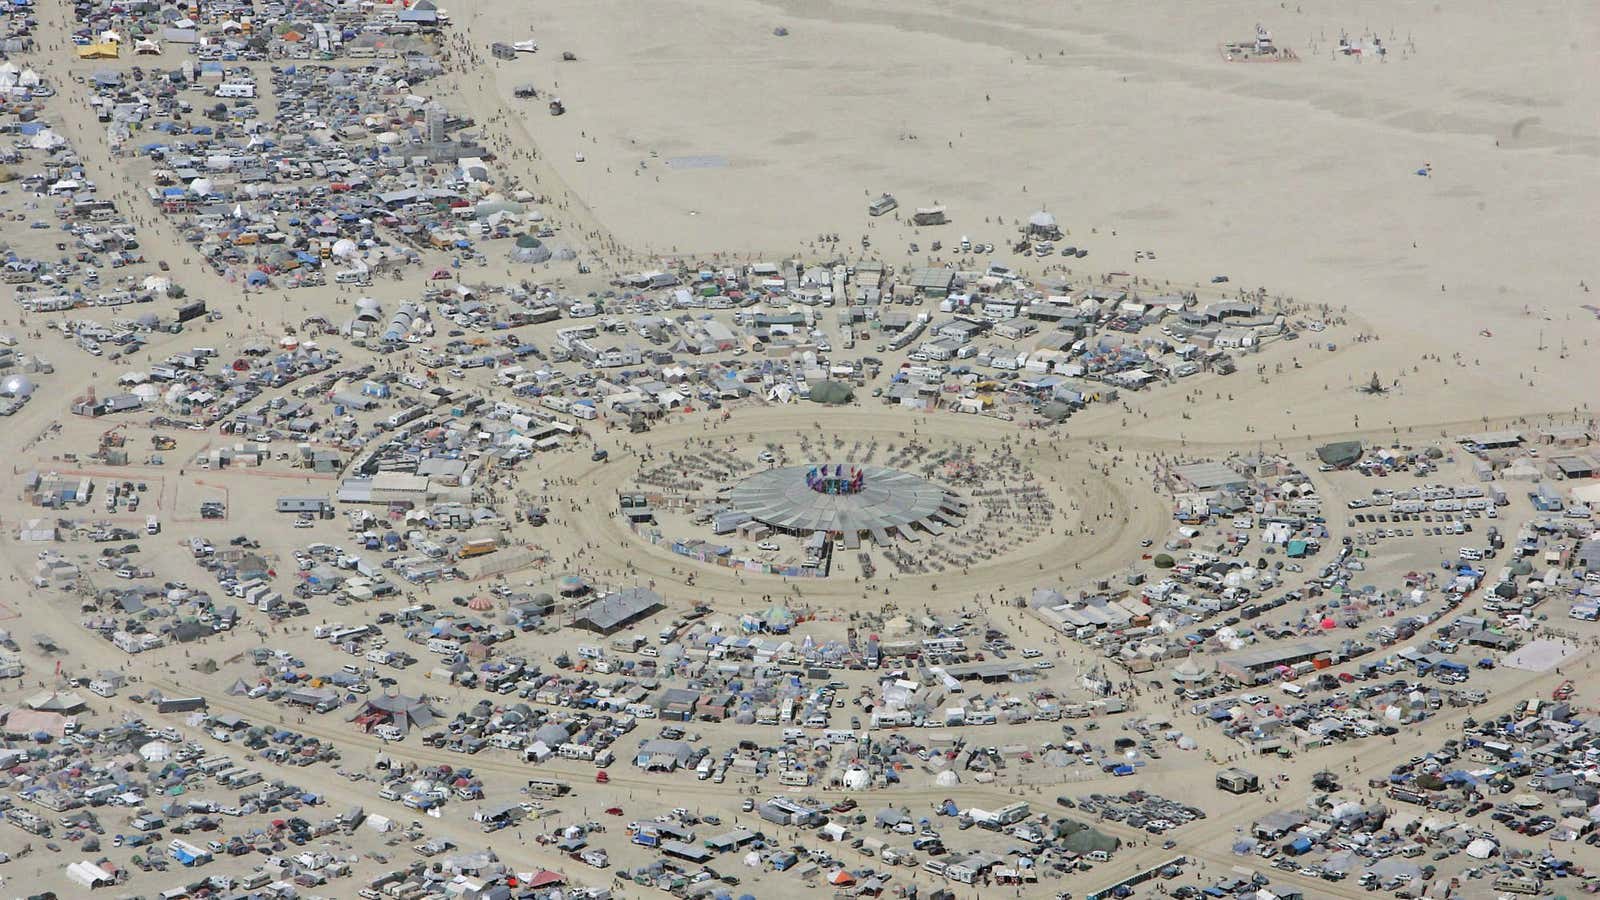 Burning Man is as white as dust in the desert.